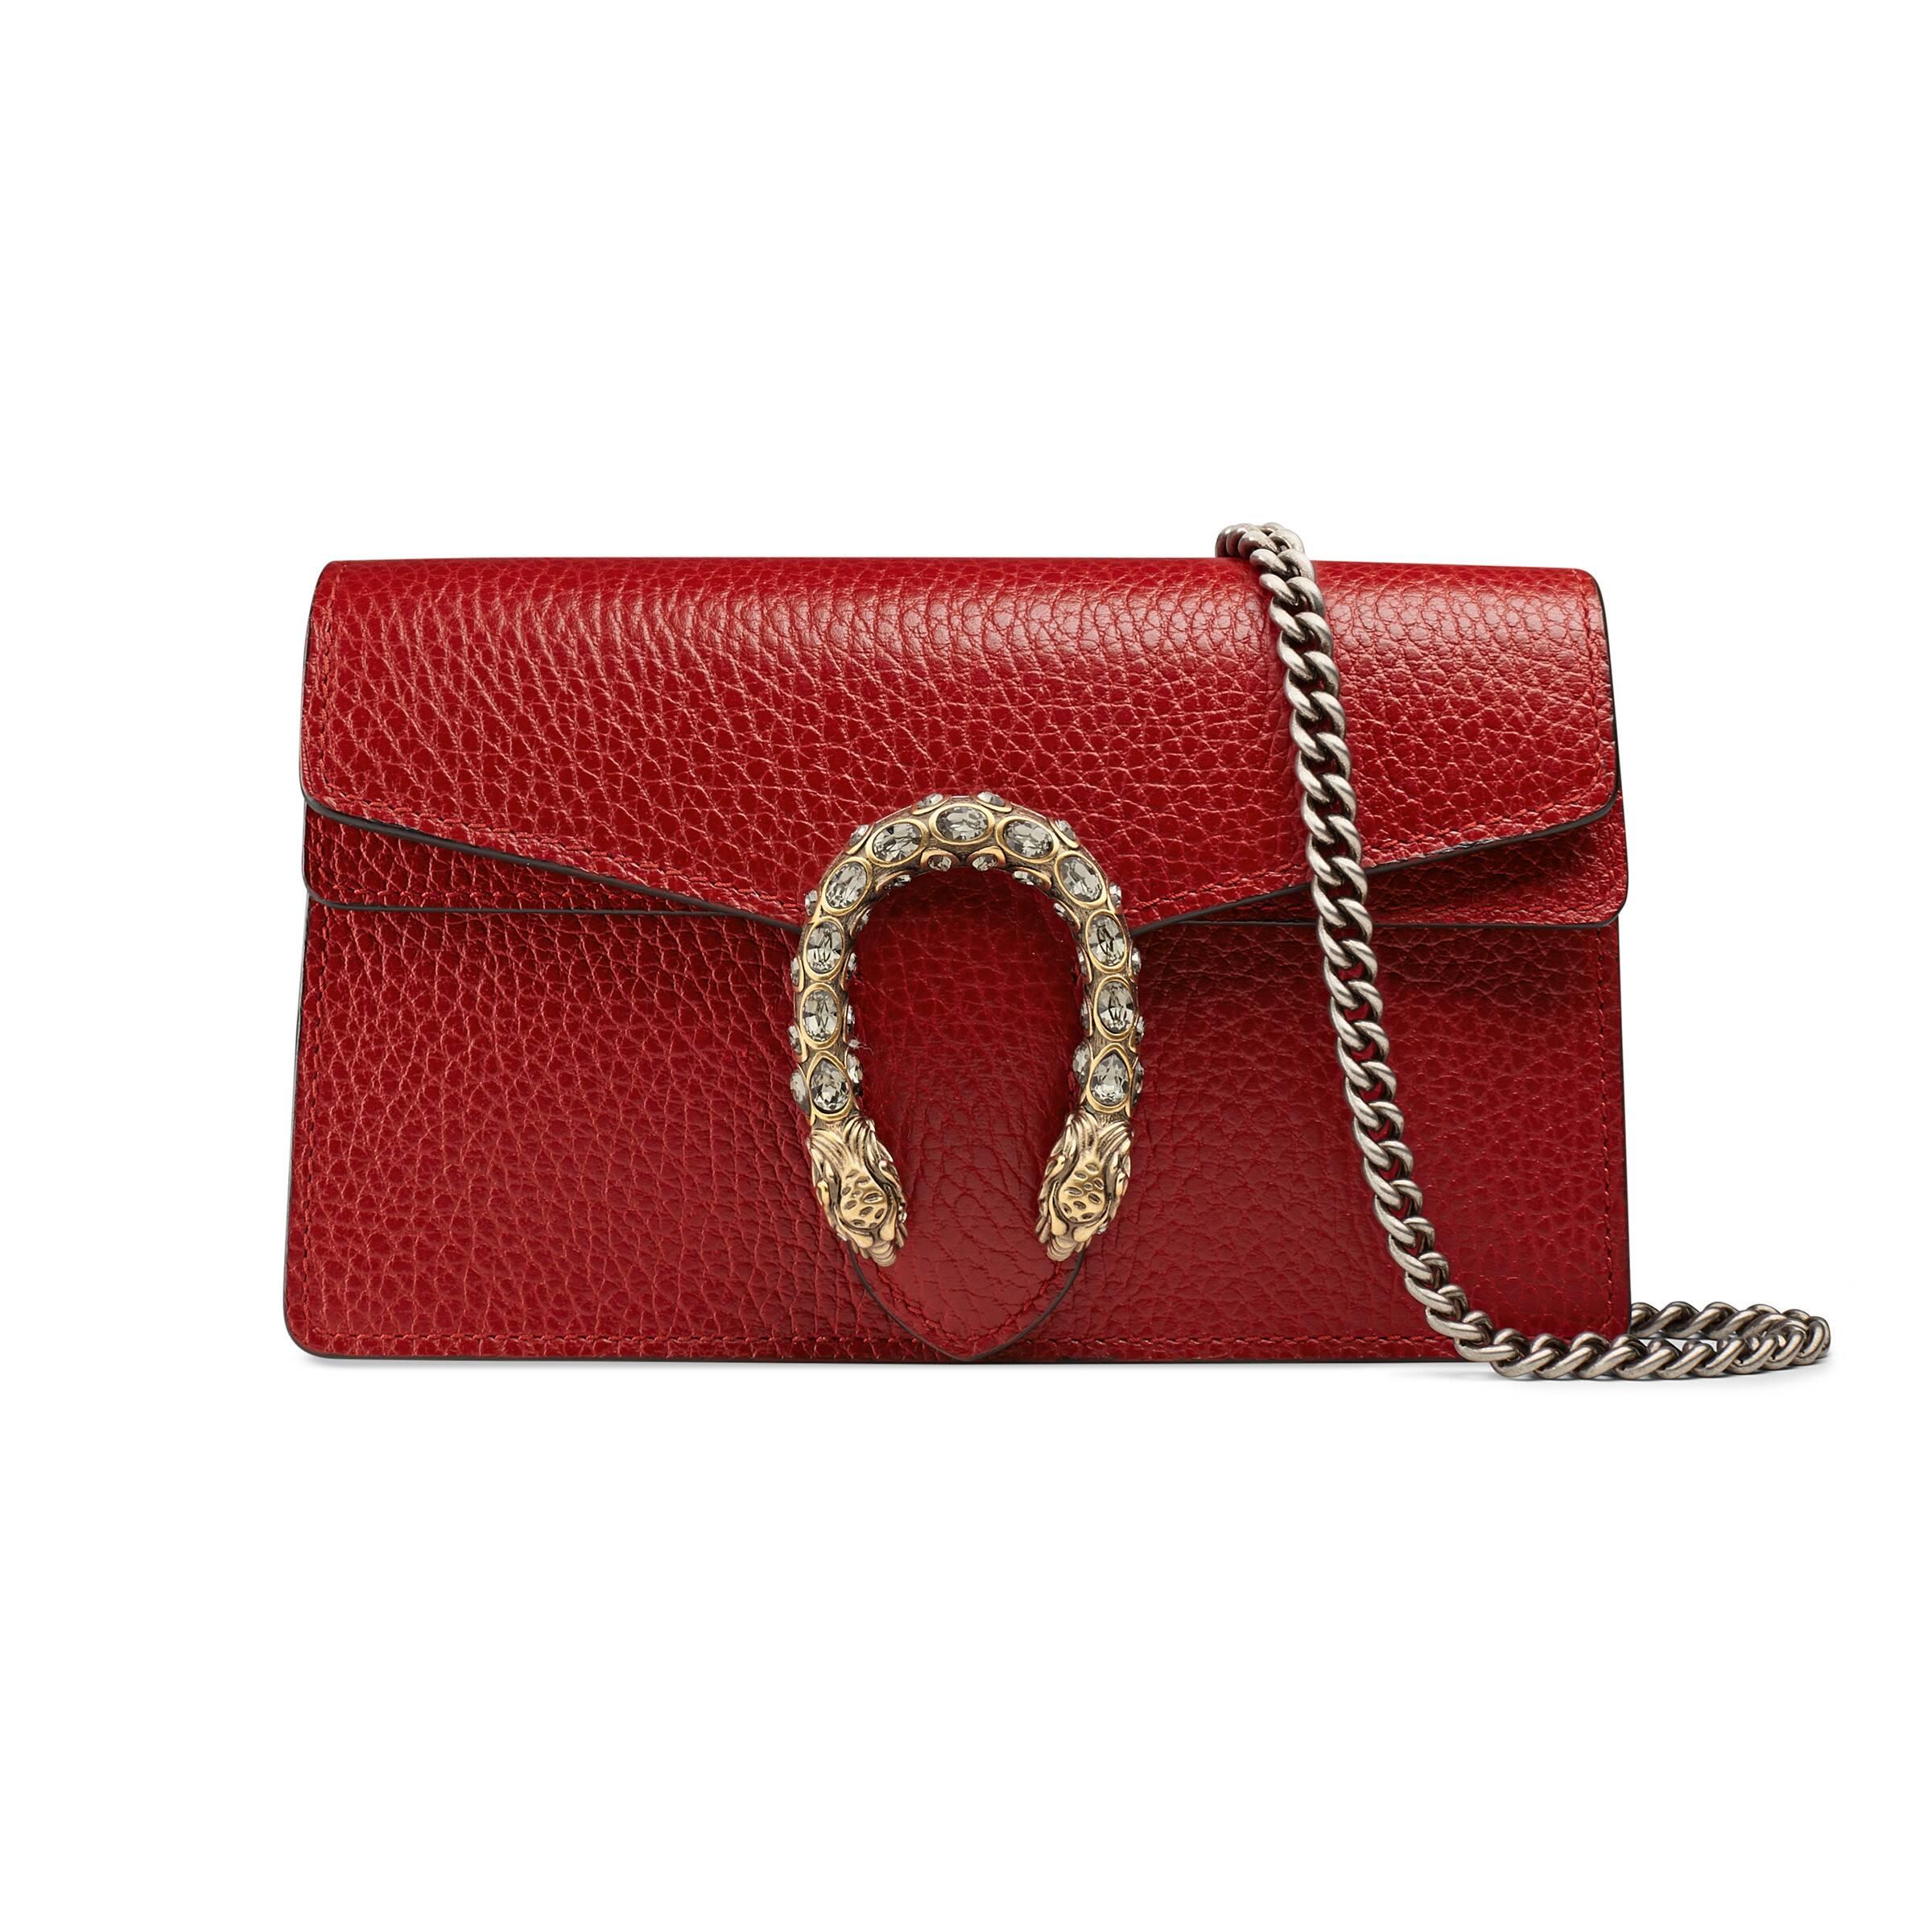 Gucci Dionysus Leather Super Mini Bag in Red - Lyst